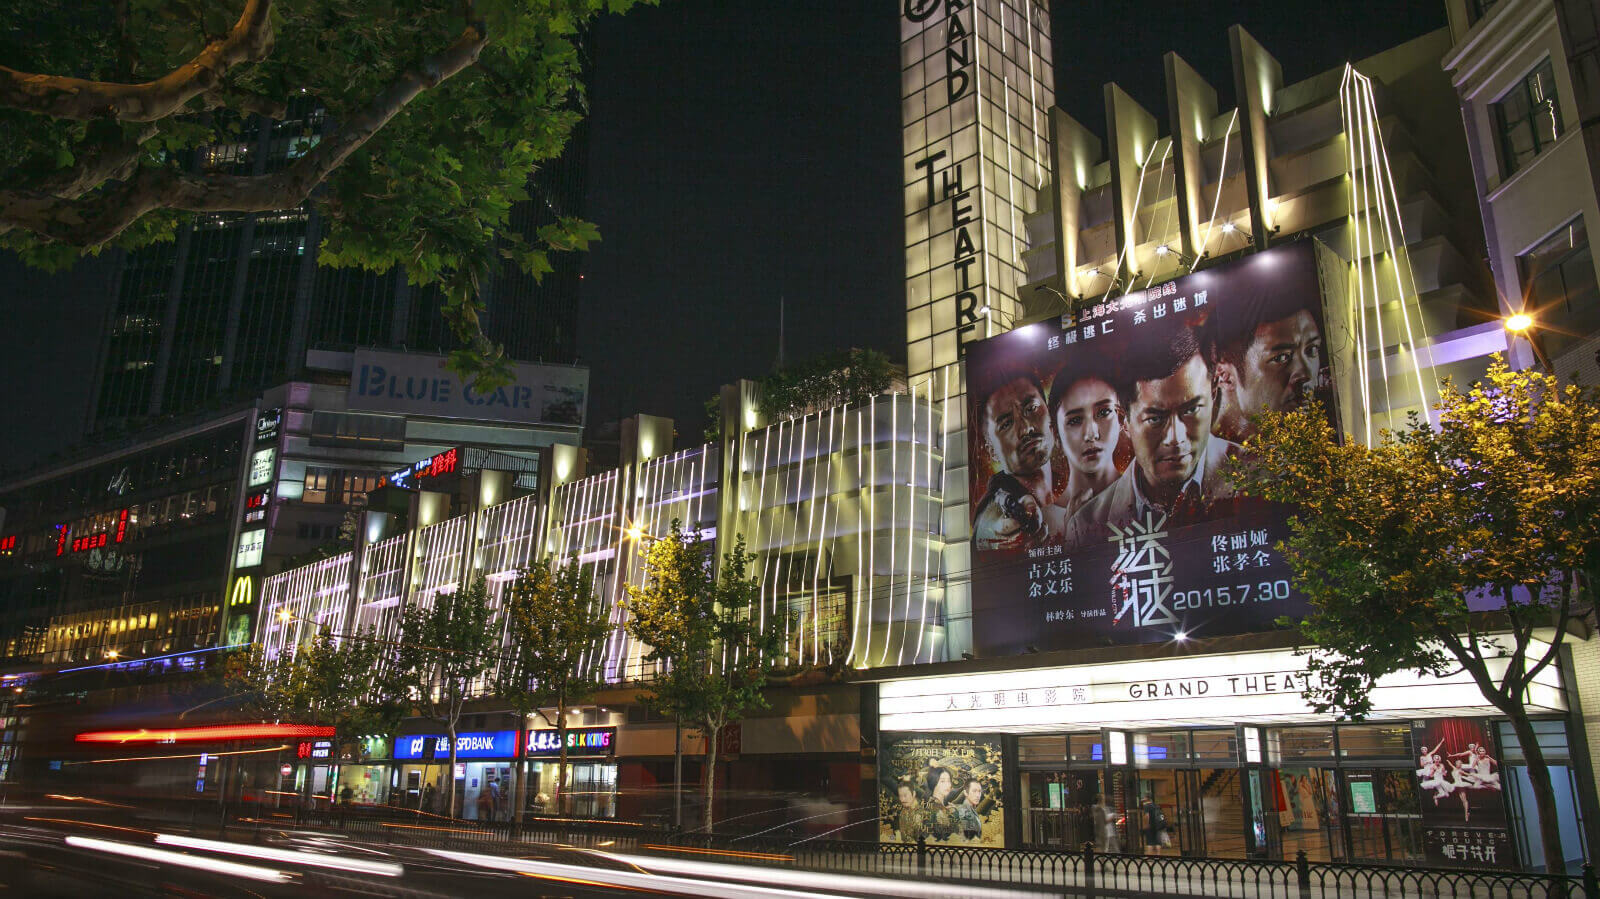 大光明电影院 -上海市文旅推广网-上海市文化和旅游局 提供专业文化和旅游及会展信息资讯